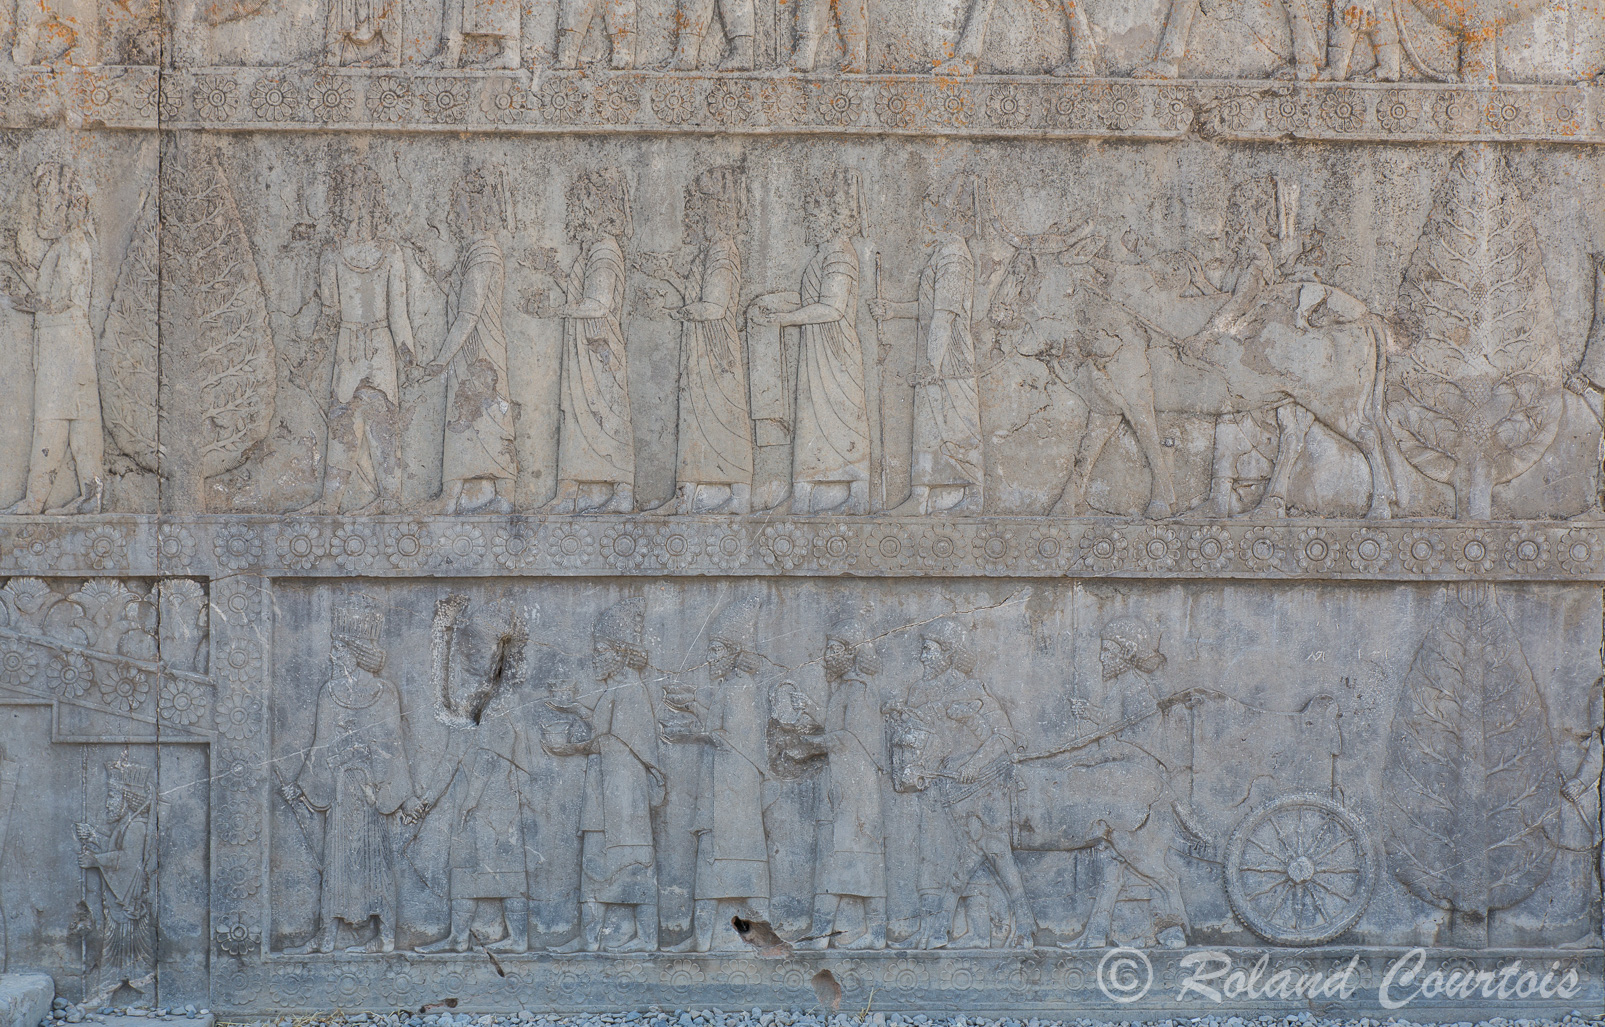 Persepolis : Deux escaliers monumentaux permettent d’accéder à l’Apadana. L’escalier oriental, très bien conservé, illustre l’une des cérémonies qui se déroulaient lors des fêtes de Nouvel An : grande procession des diverses nations vassales devant le souverain et la présentation de leurs tributs.